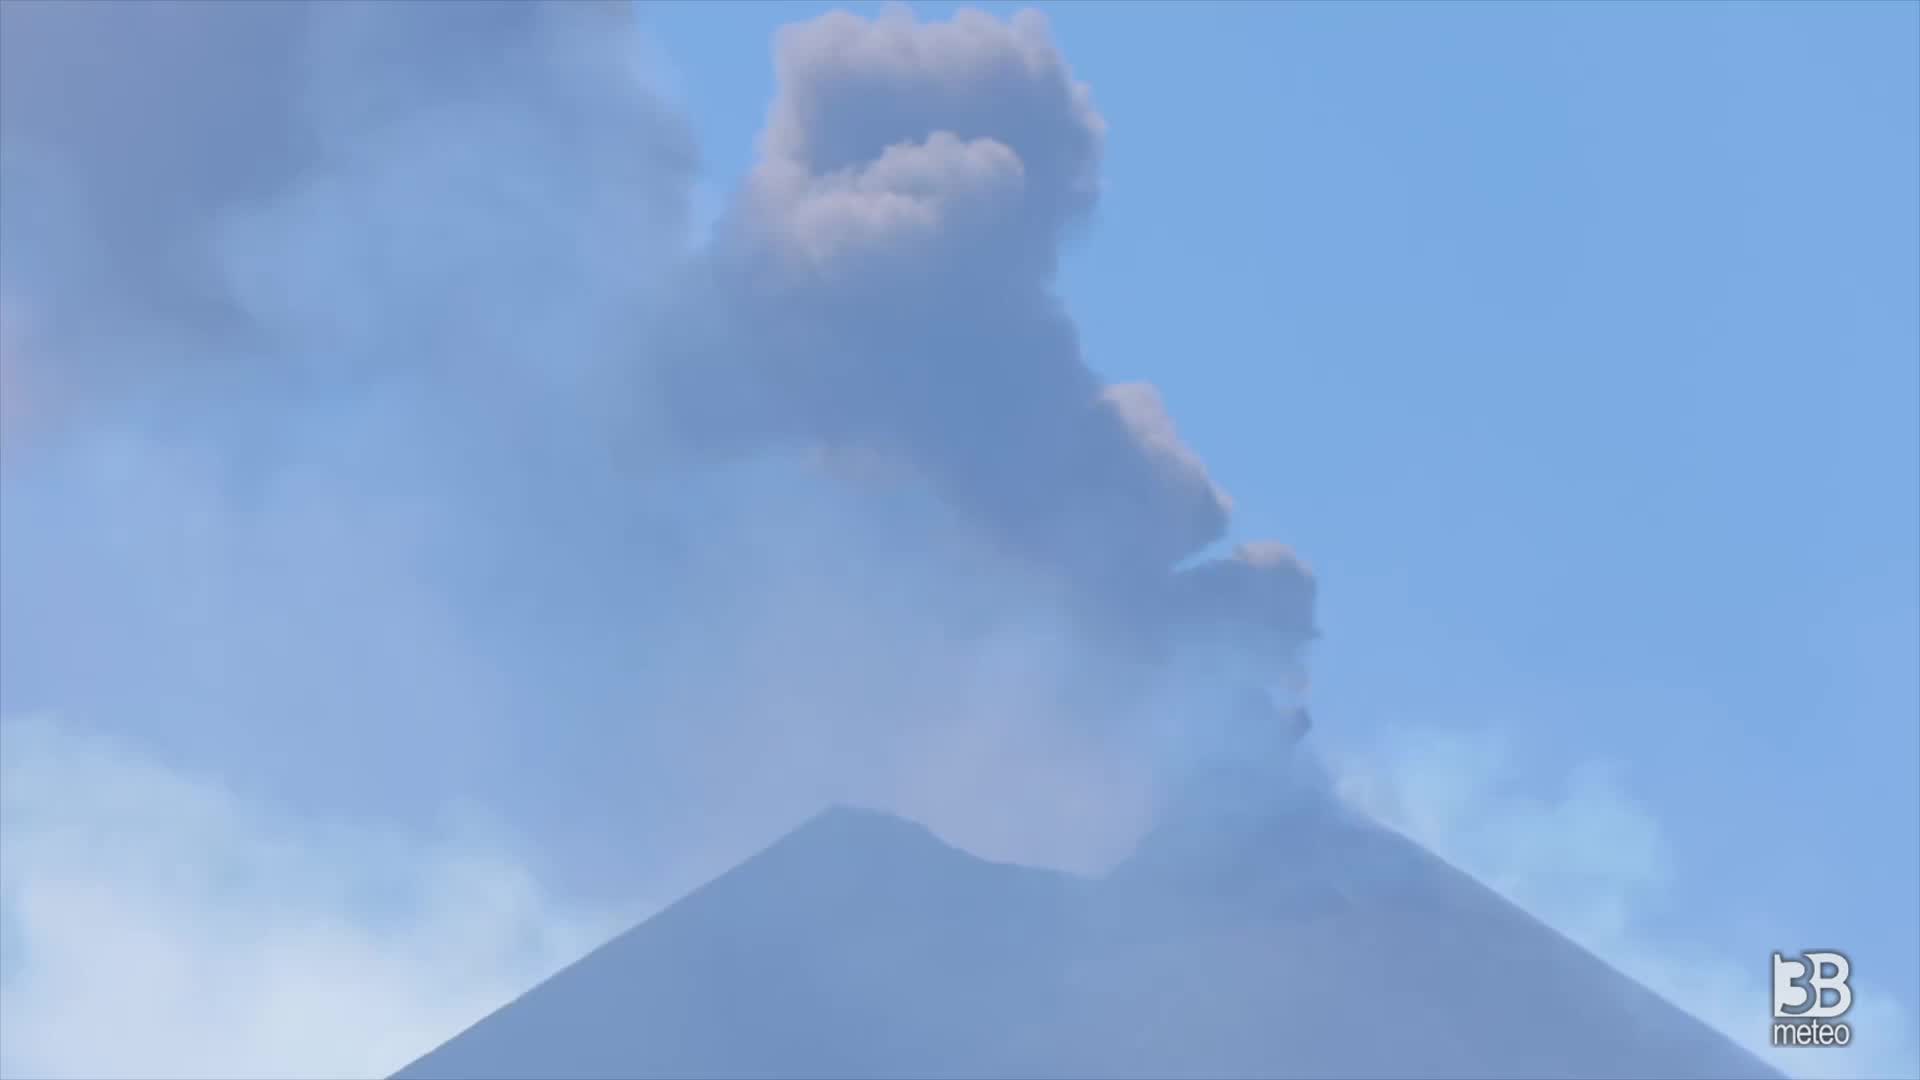 Cronaca meteo video: Etna, emissione fumo in aumento: livello allerta diventa giallo